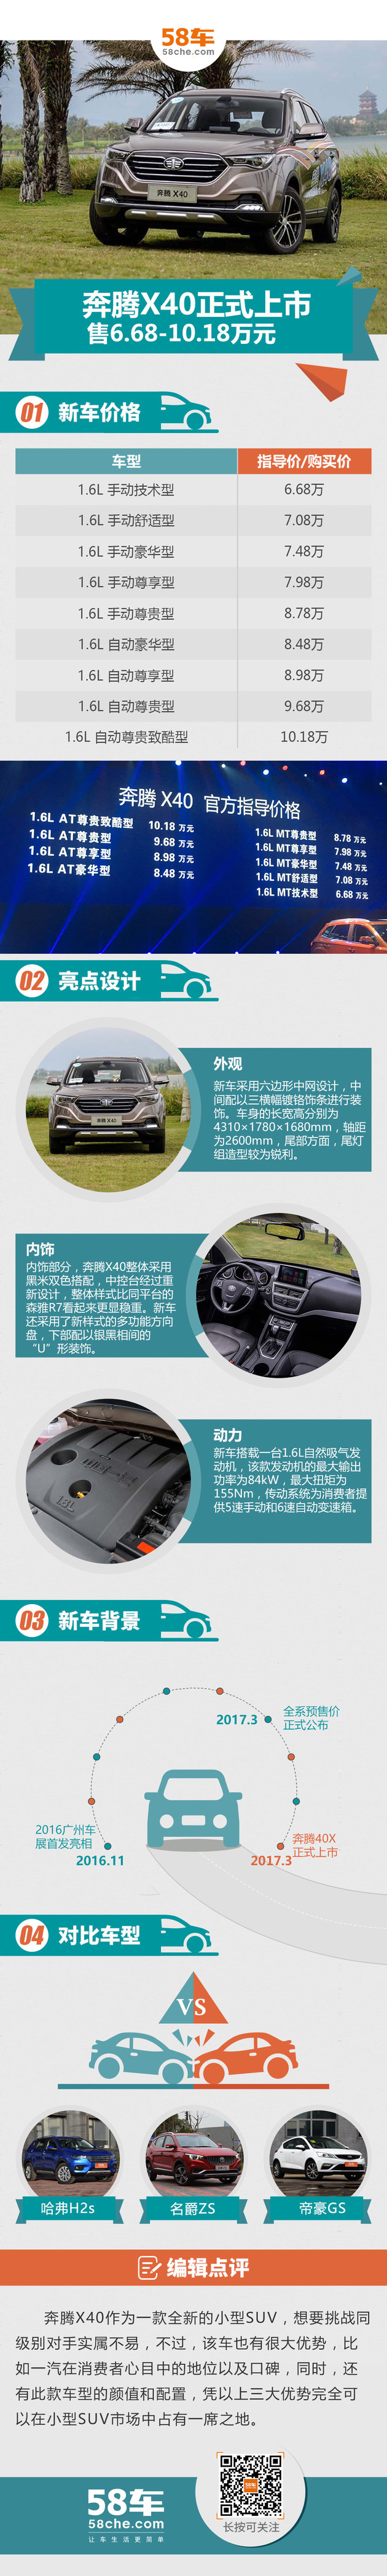 奔腾X40正式上市 售价为6.68-10.18万元